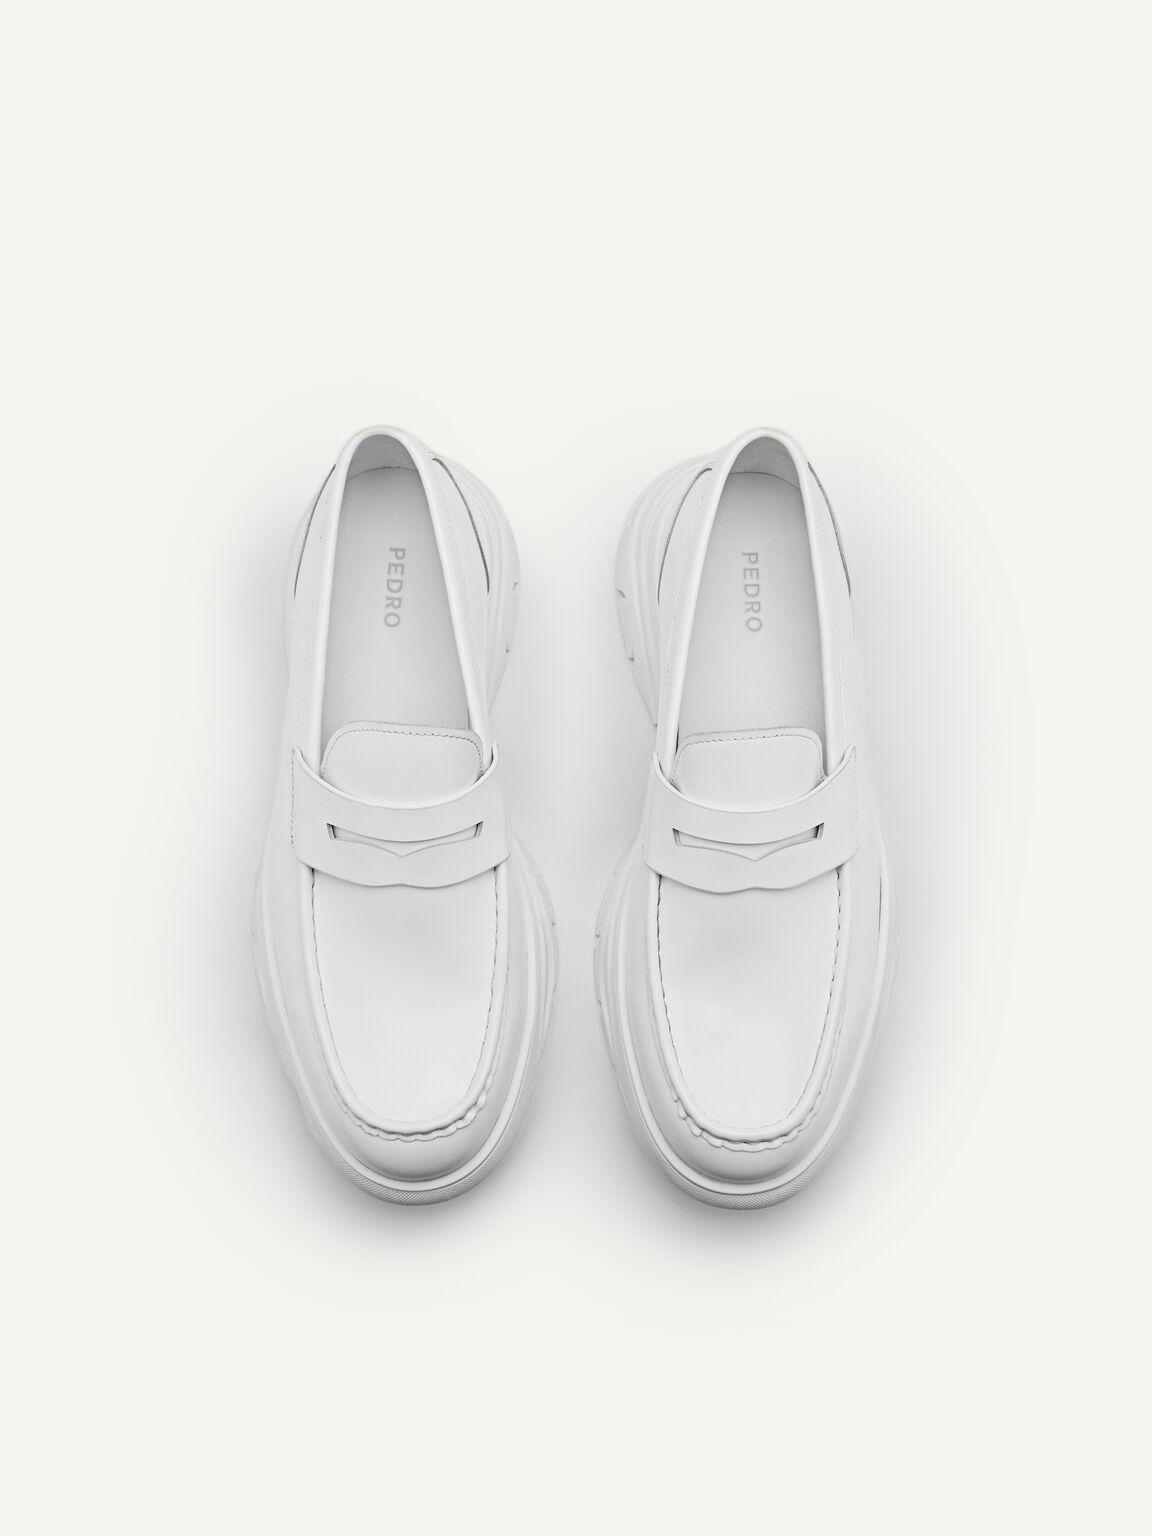 Hybrix皮革便士樂福鞋, 白色